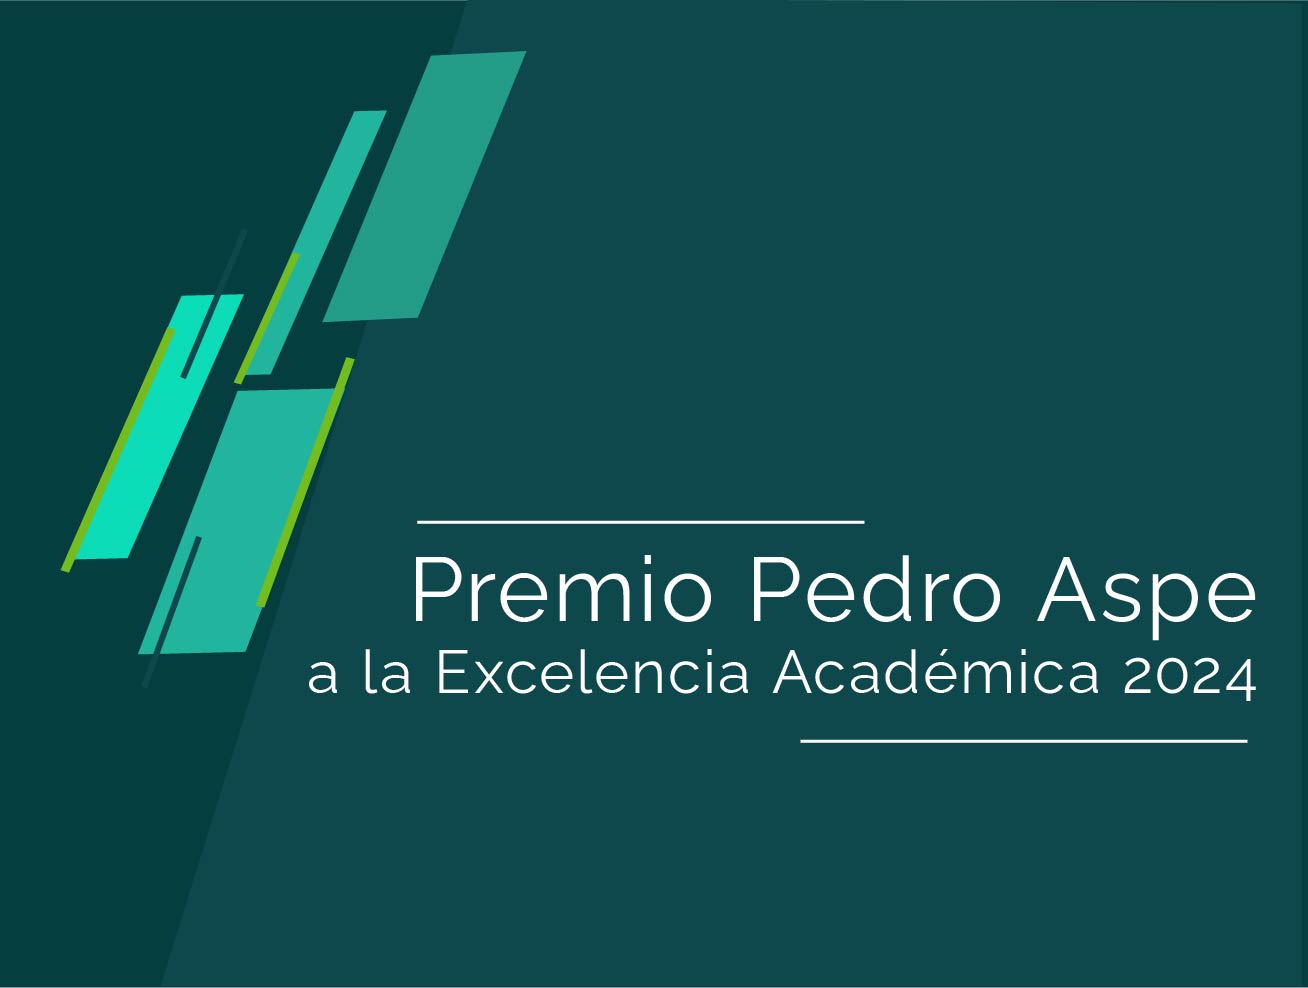 La Maestría en Economía Aplicada anuncia a los ganadores del Premio Pedro Aspe 2024